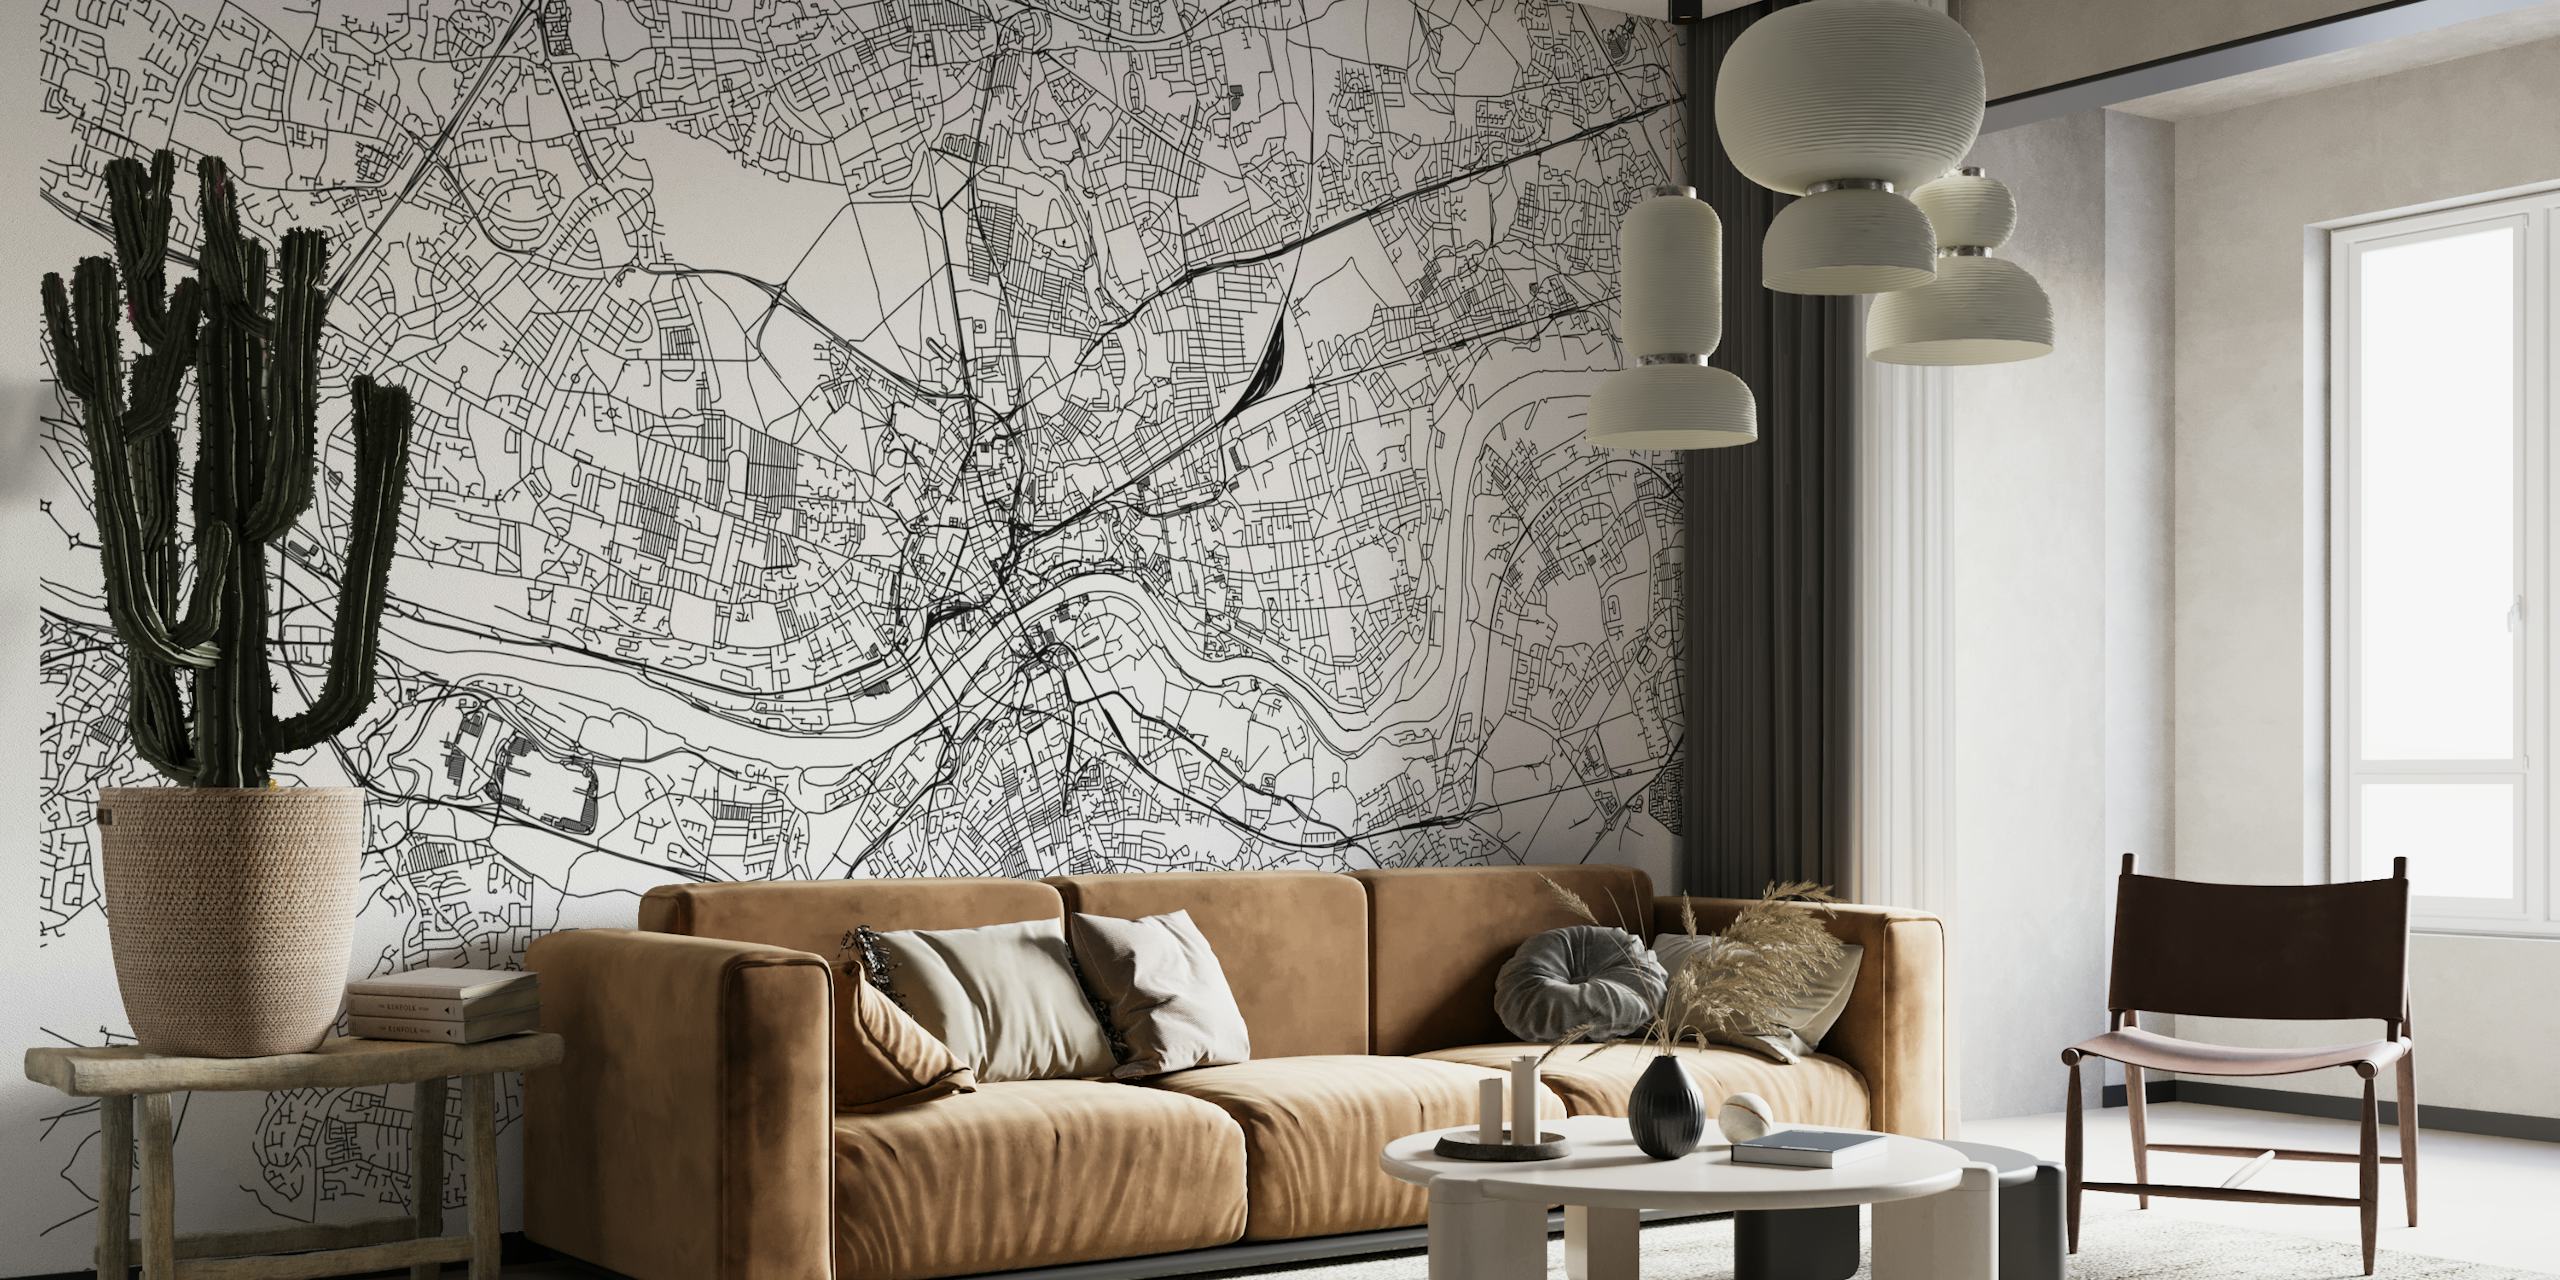 Wandgemälde mit Stadtplan von Newcastle, das Straßen und Sehenswürdigkeiten zeigt